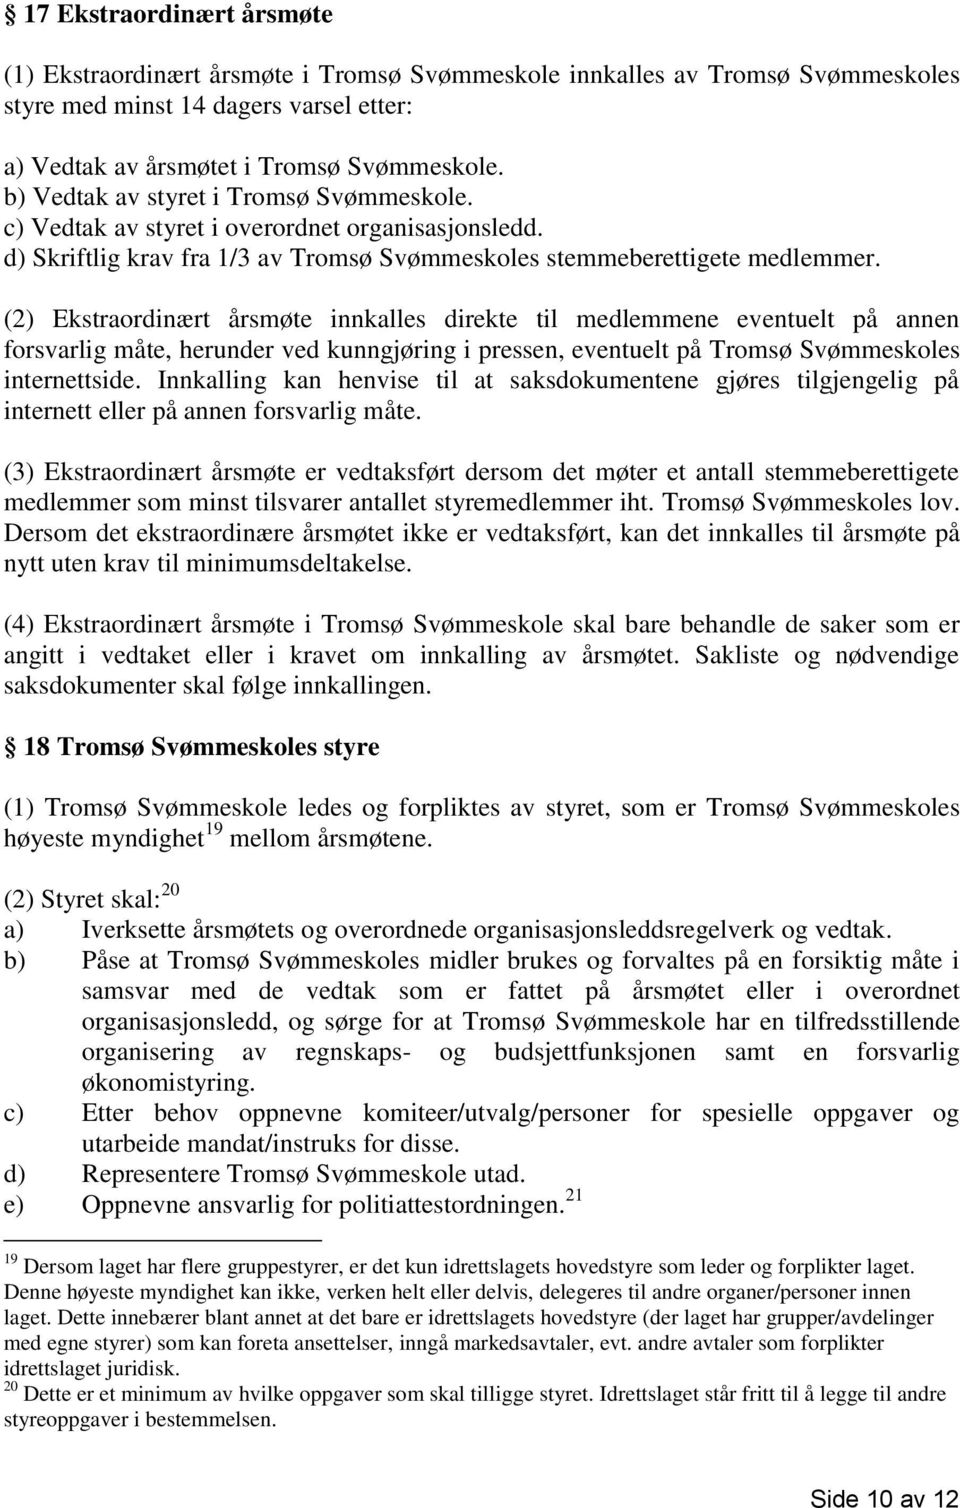 (2) Ekstraordinært årsmøte innkalles direkte til medlemmene eventuelt på annen forsvarlig måte, herunder ved kunngjøring i pressen, eventuelt på Tromsø Svømmeskoles internettside.